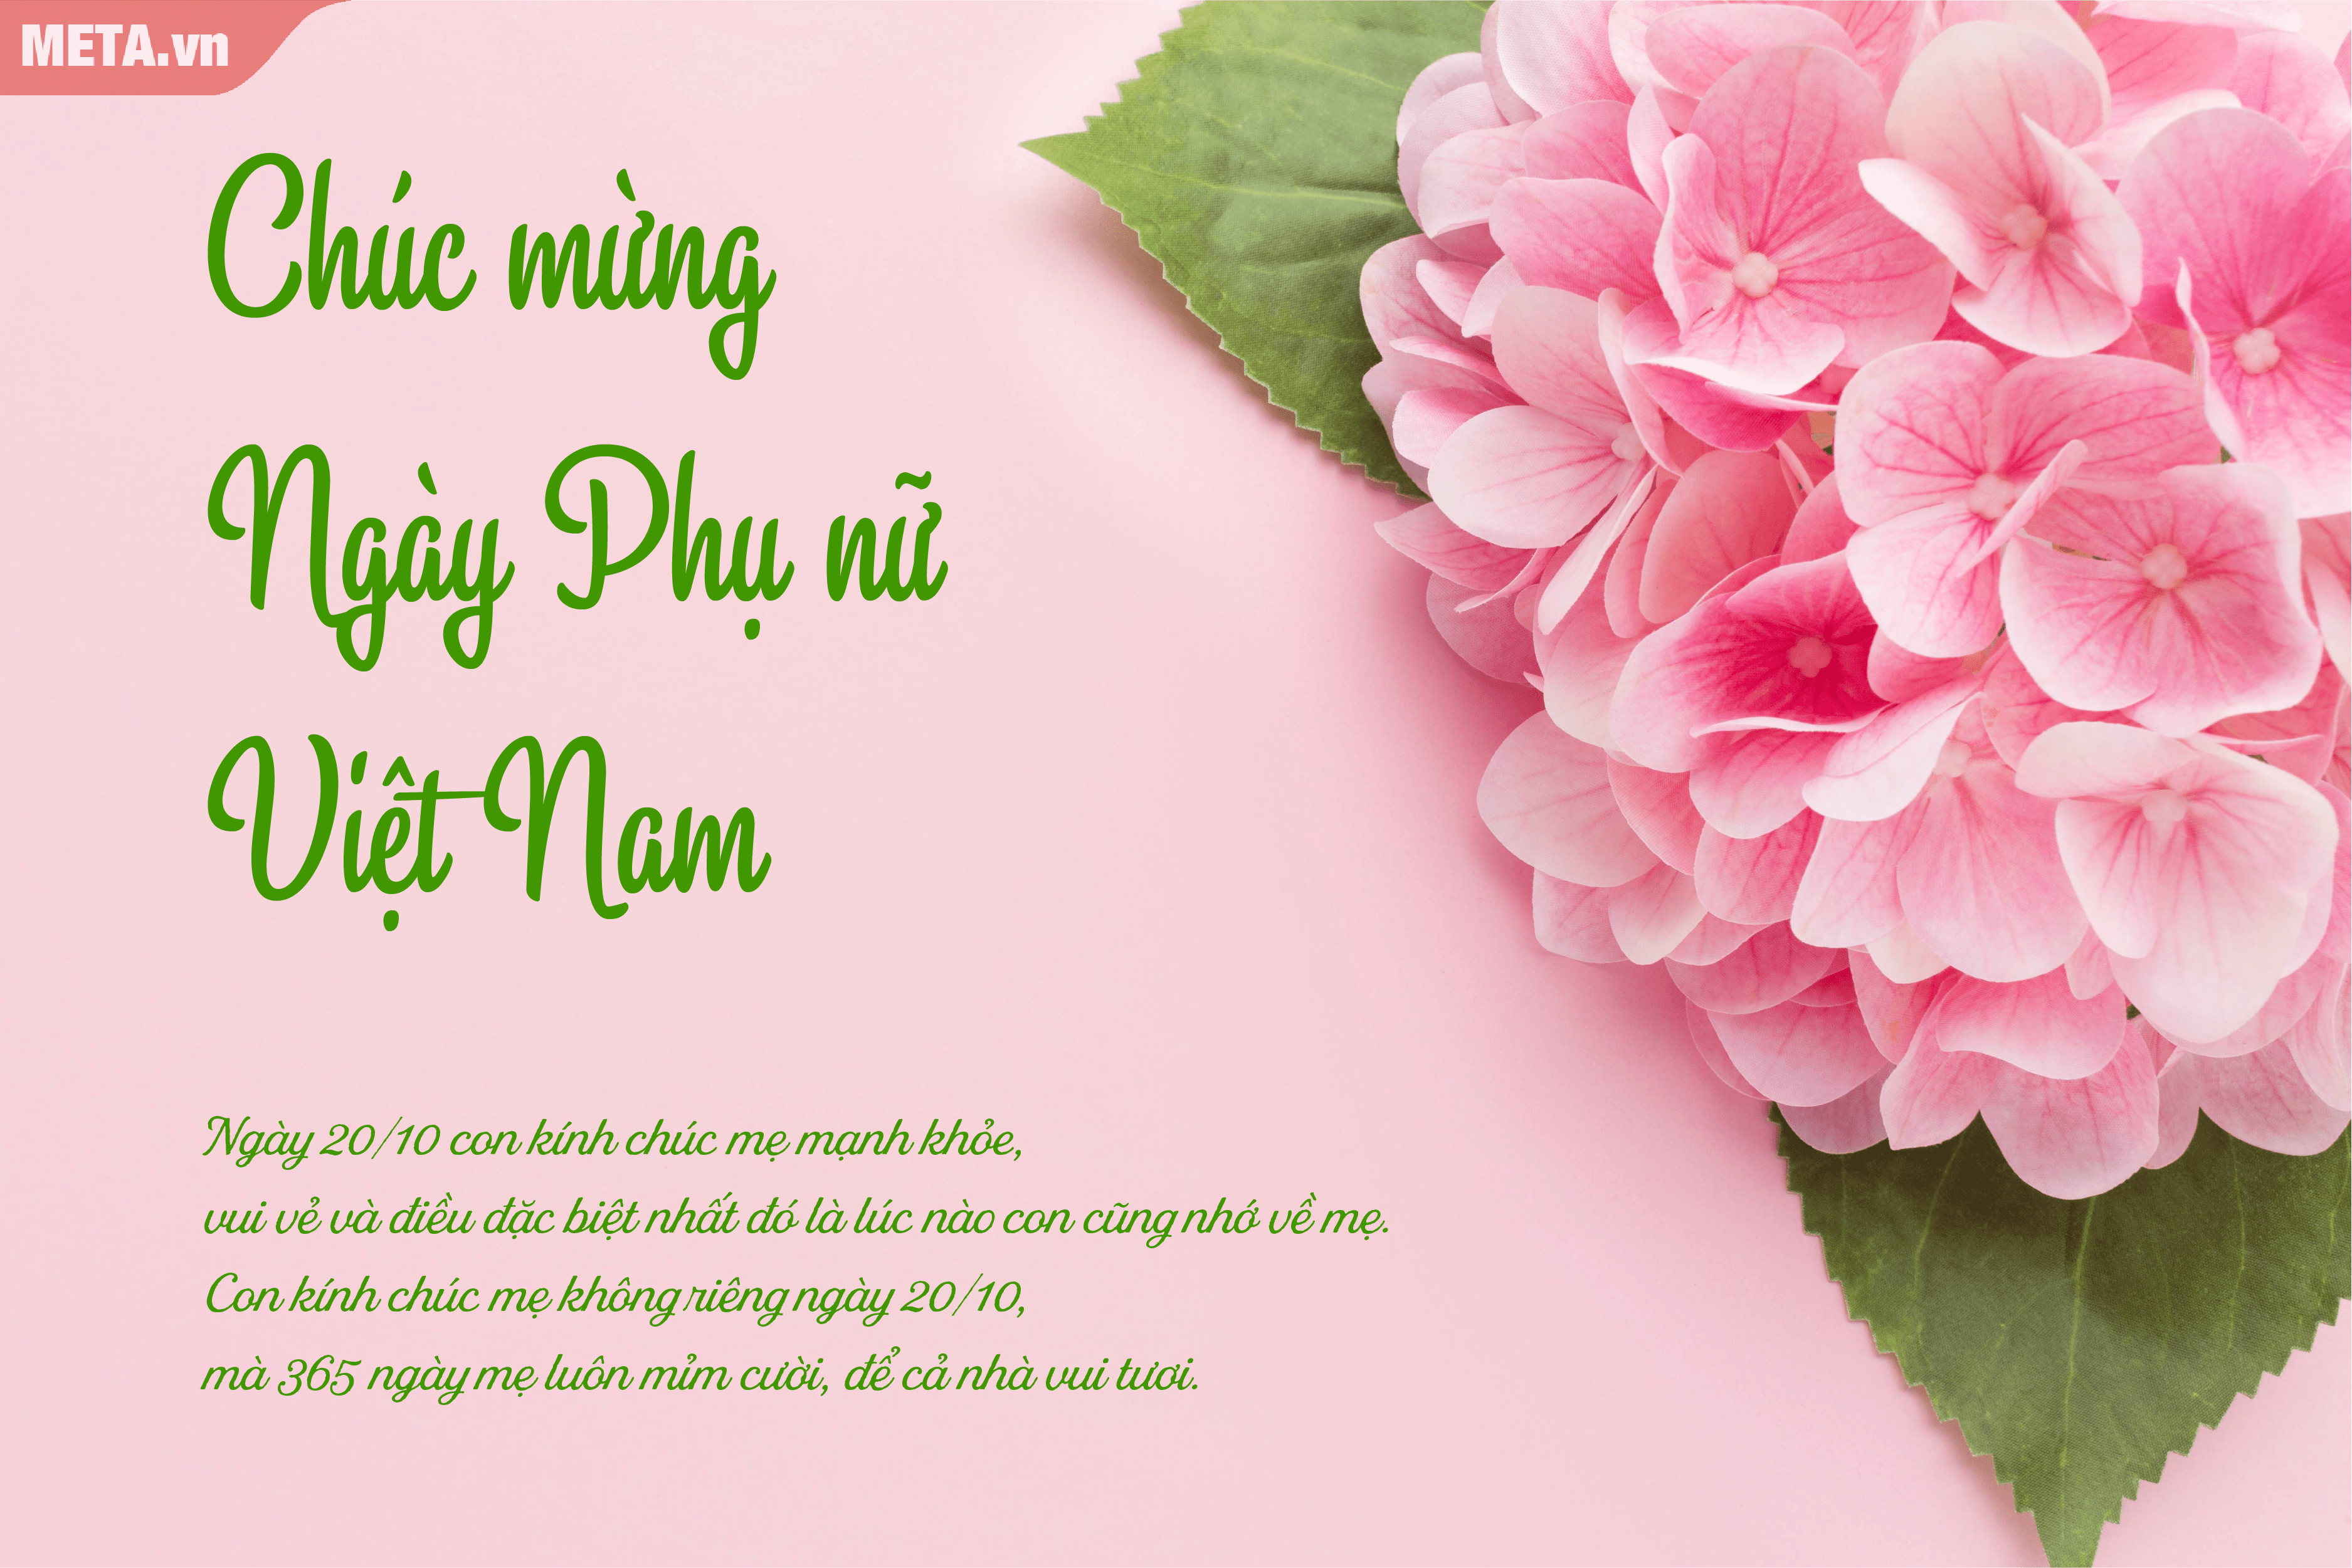 HoaTieu.vn là trang web chuyên cung cấp các dịch vụ hoa tươi và quà tặng độc đáo. Hình ảnh về hoa tươi tại HoaTieu.vn đang chờ đón bạn. Hãy đến và xem ngay để trải nghiệm cảm giác tuyệt vời khi được tặng hoa!